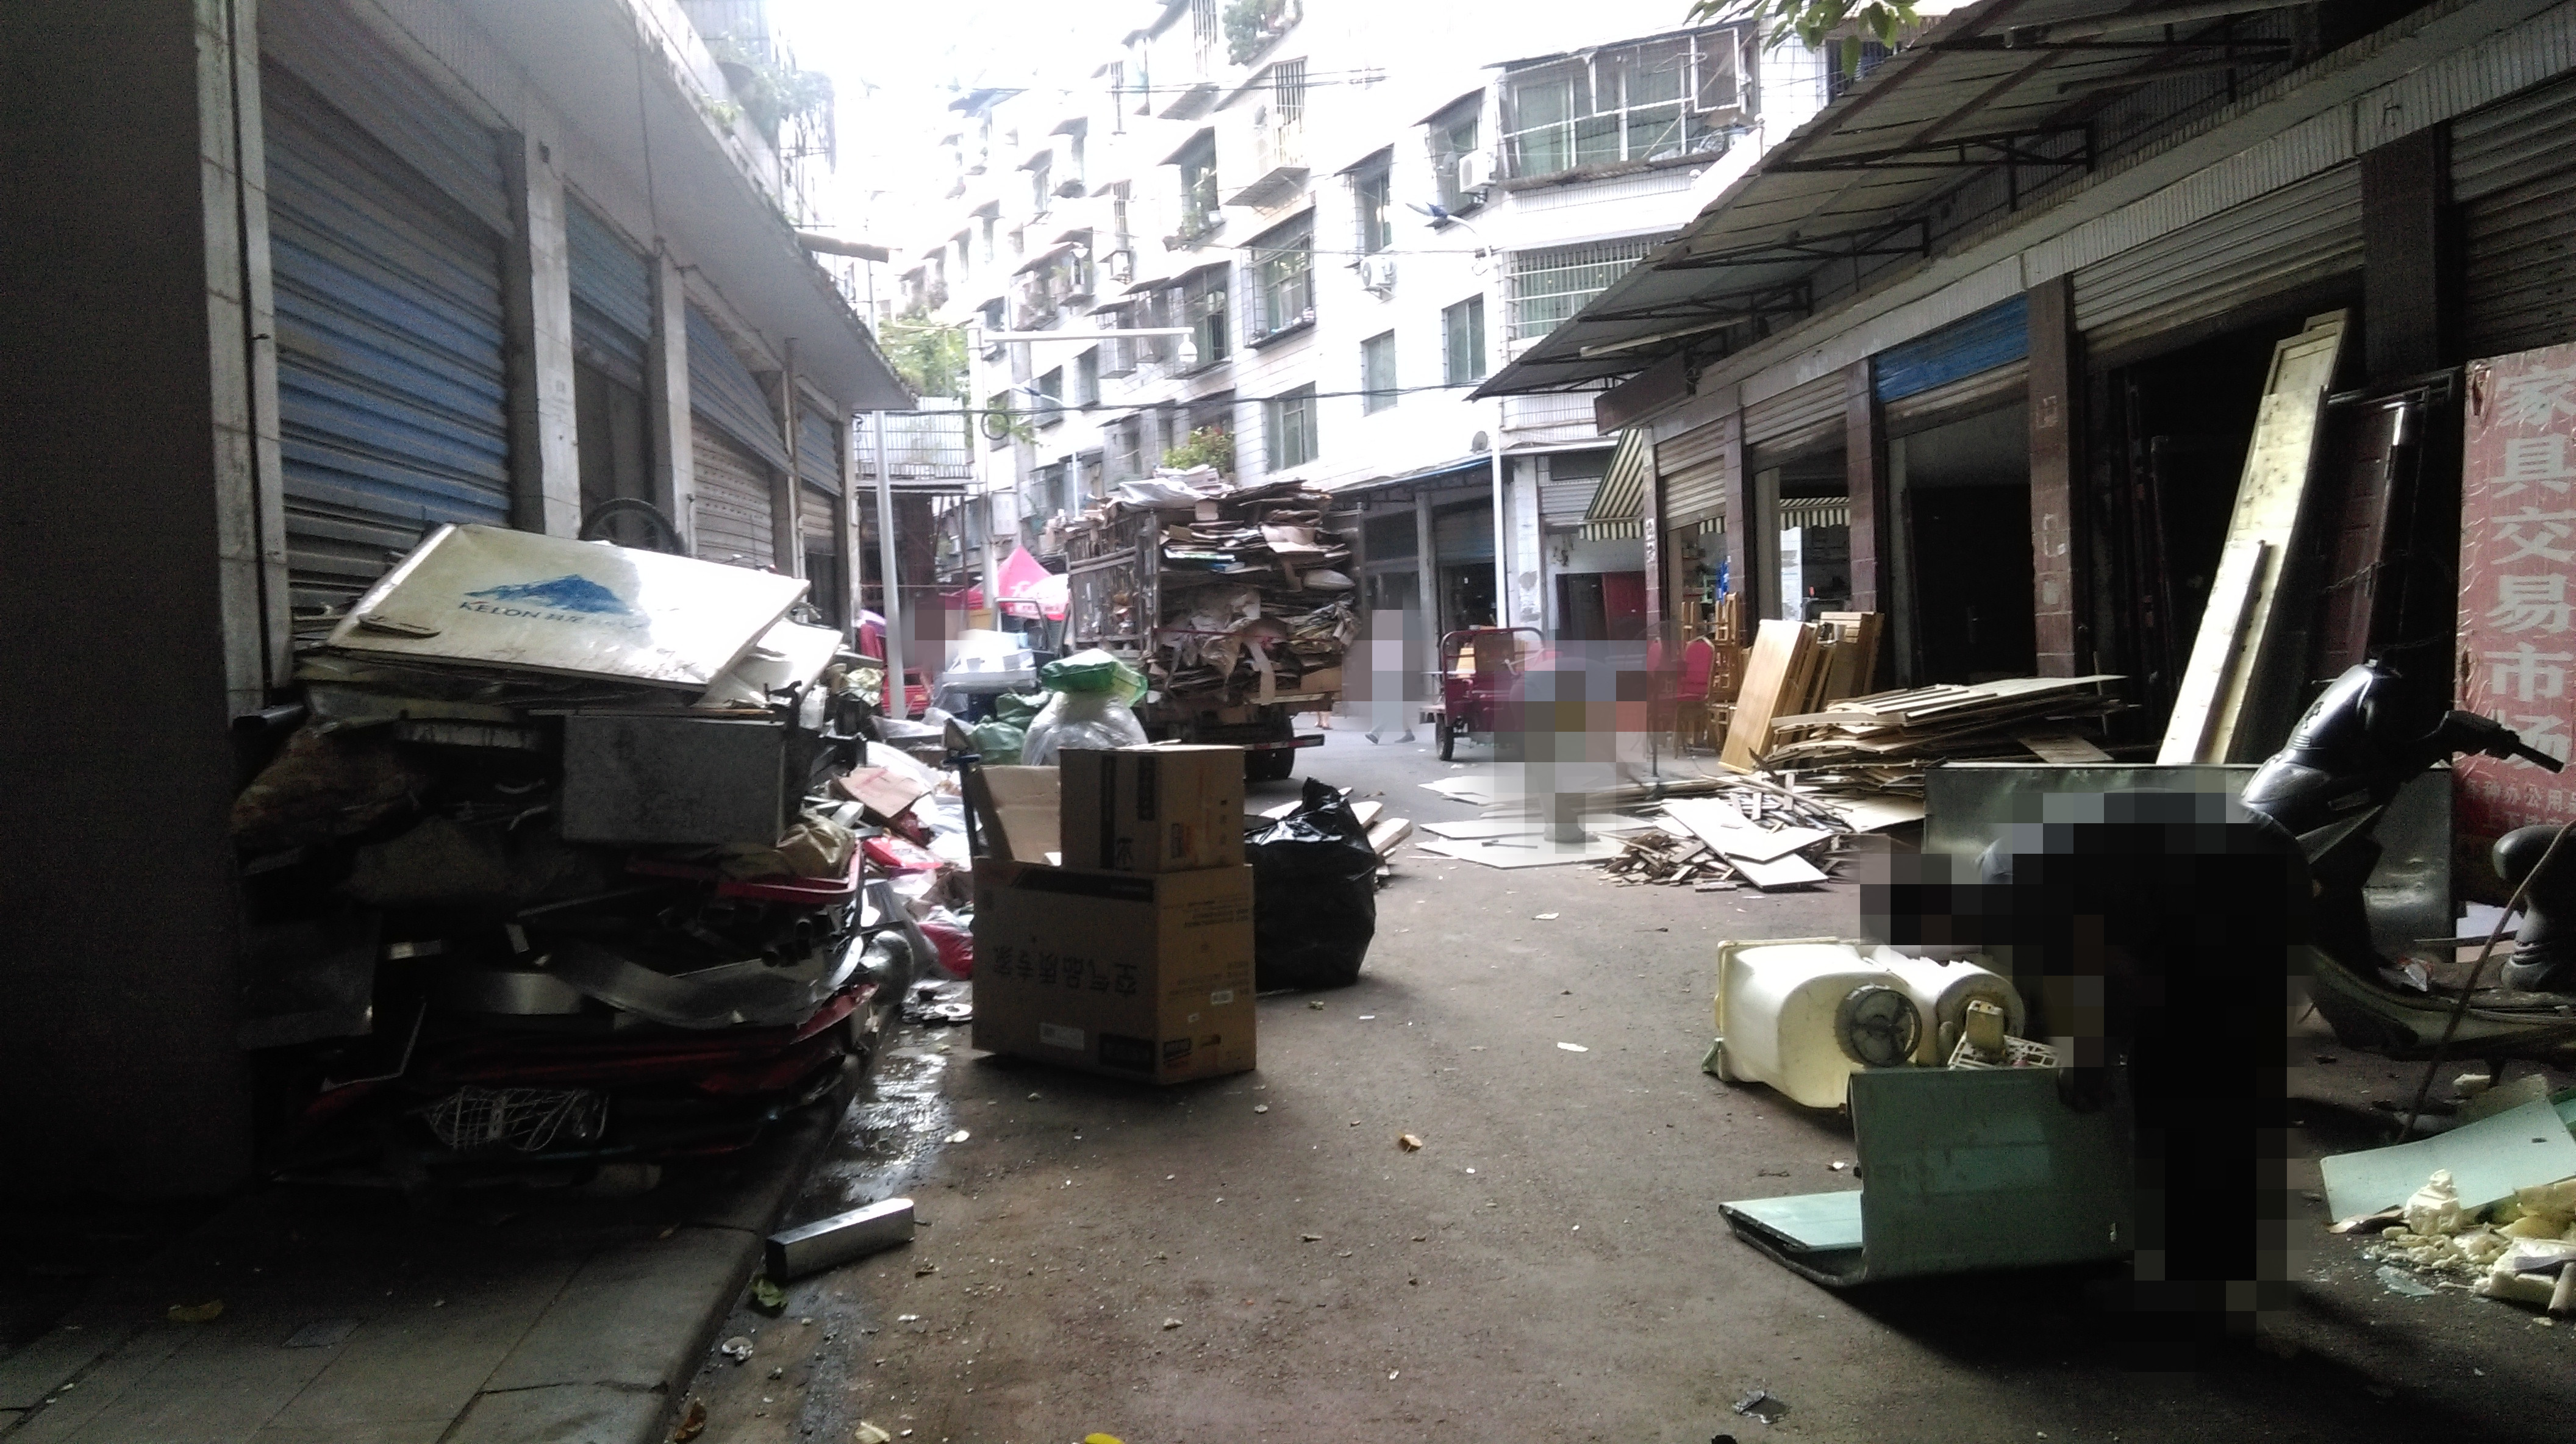 蓬安磨子街这条背街小巷遍地脏乱差,收废旧的商户都把此地当成自家后